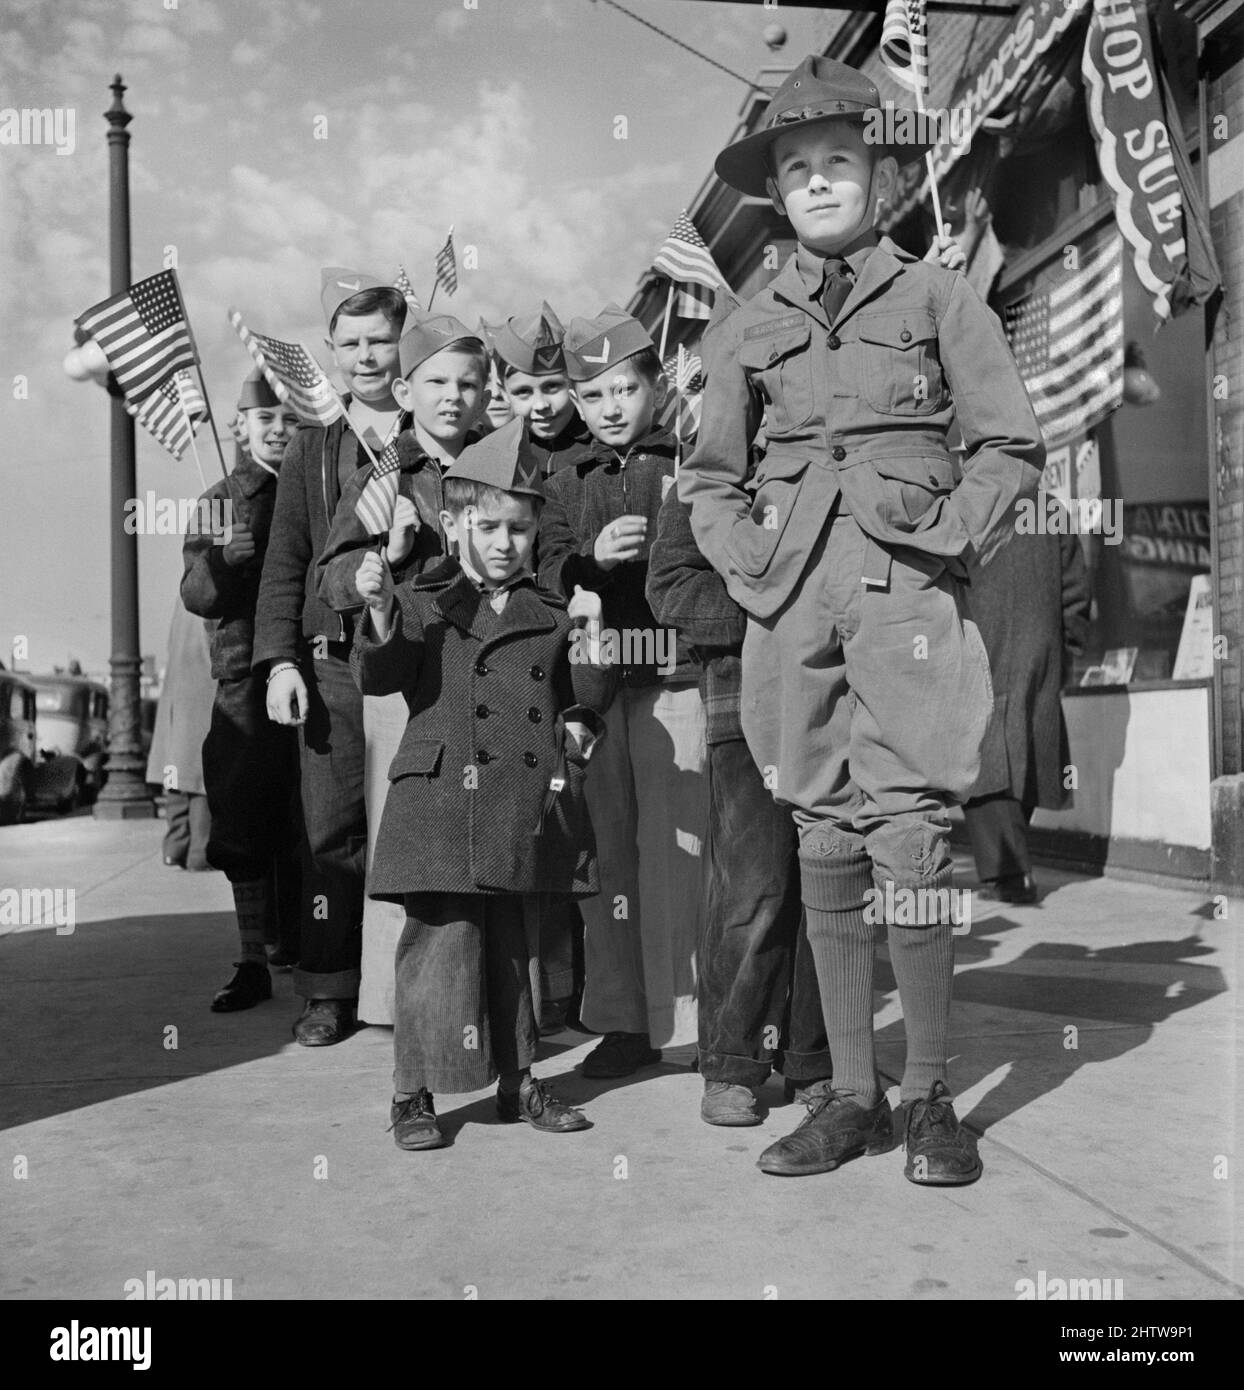 Pfadfindergruppe führende Gruppe junger Jungen, die Garnisonkappen tragen und amerikanische Flaggen halten, zu Beginn der Parade und der Flaggenzeremonie im Büro des Zivilverteidigungshauptquartiers, Chicago, Illinois, USA, Jack Delano, US Office of war Information/USA Farm Security Administration, 11. November 1942 Stockfoto